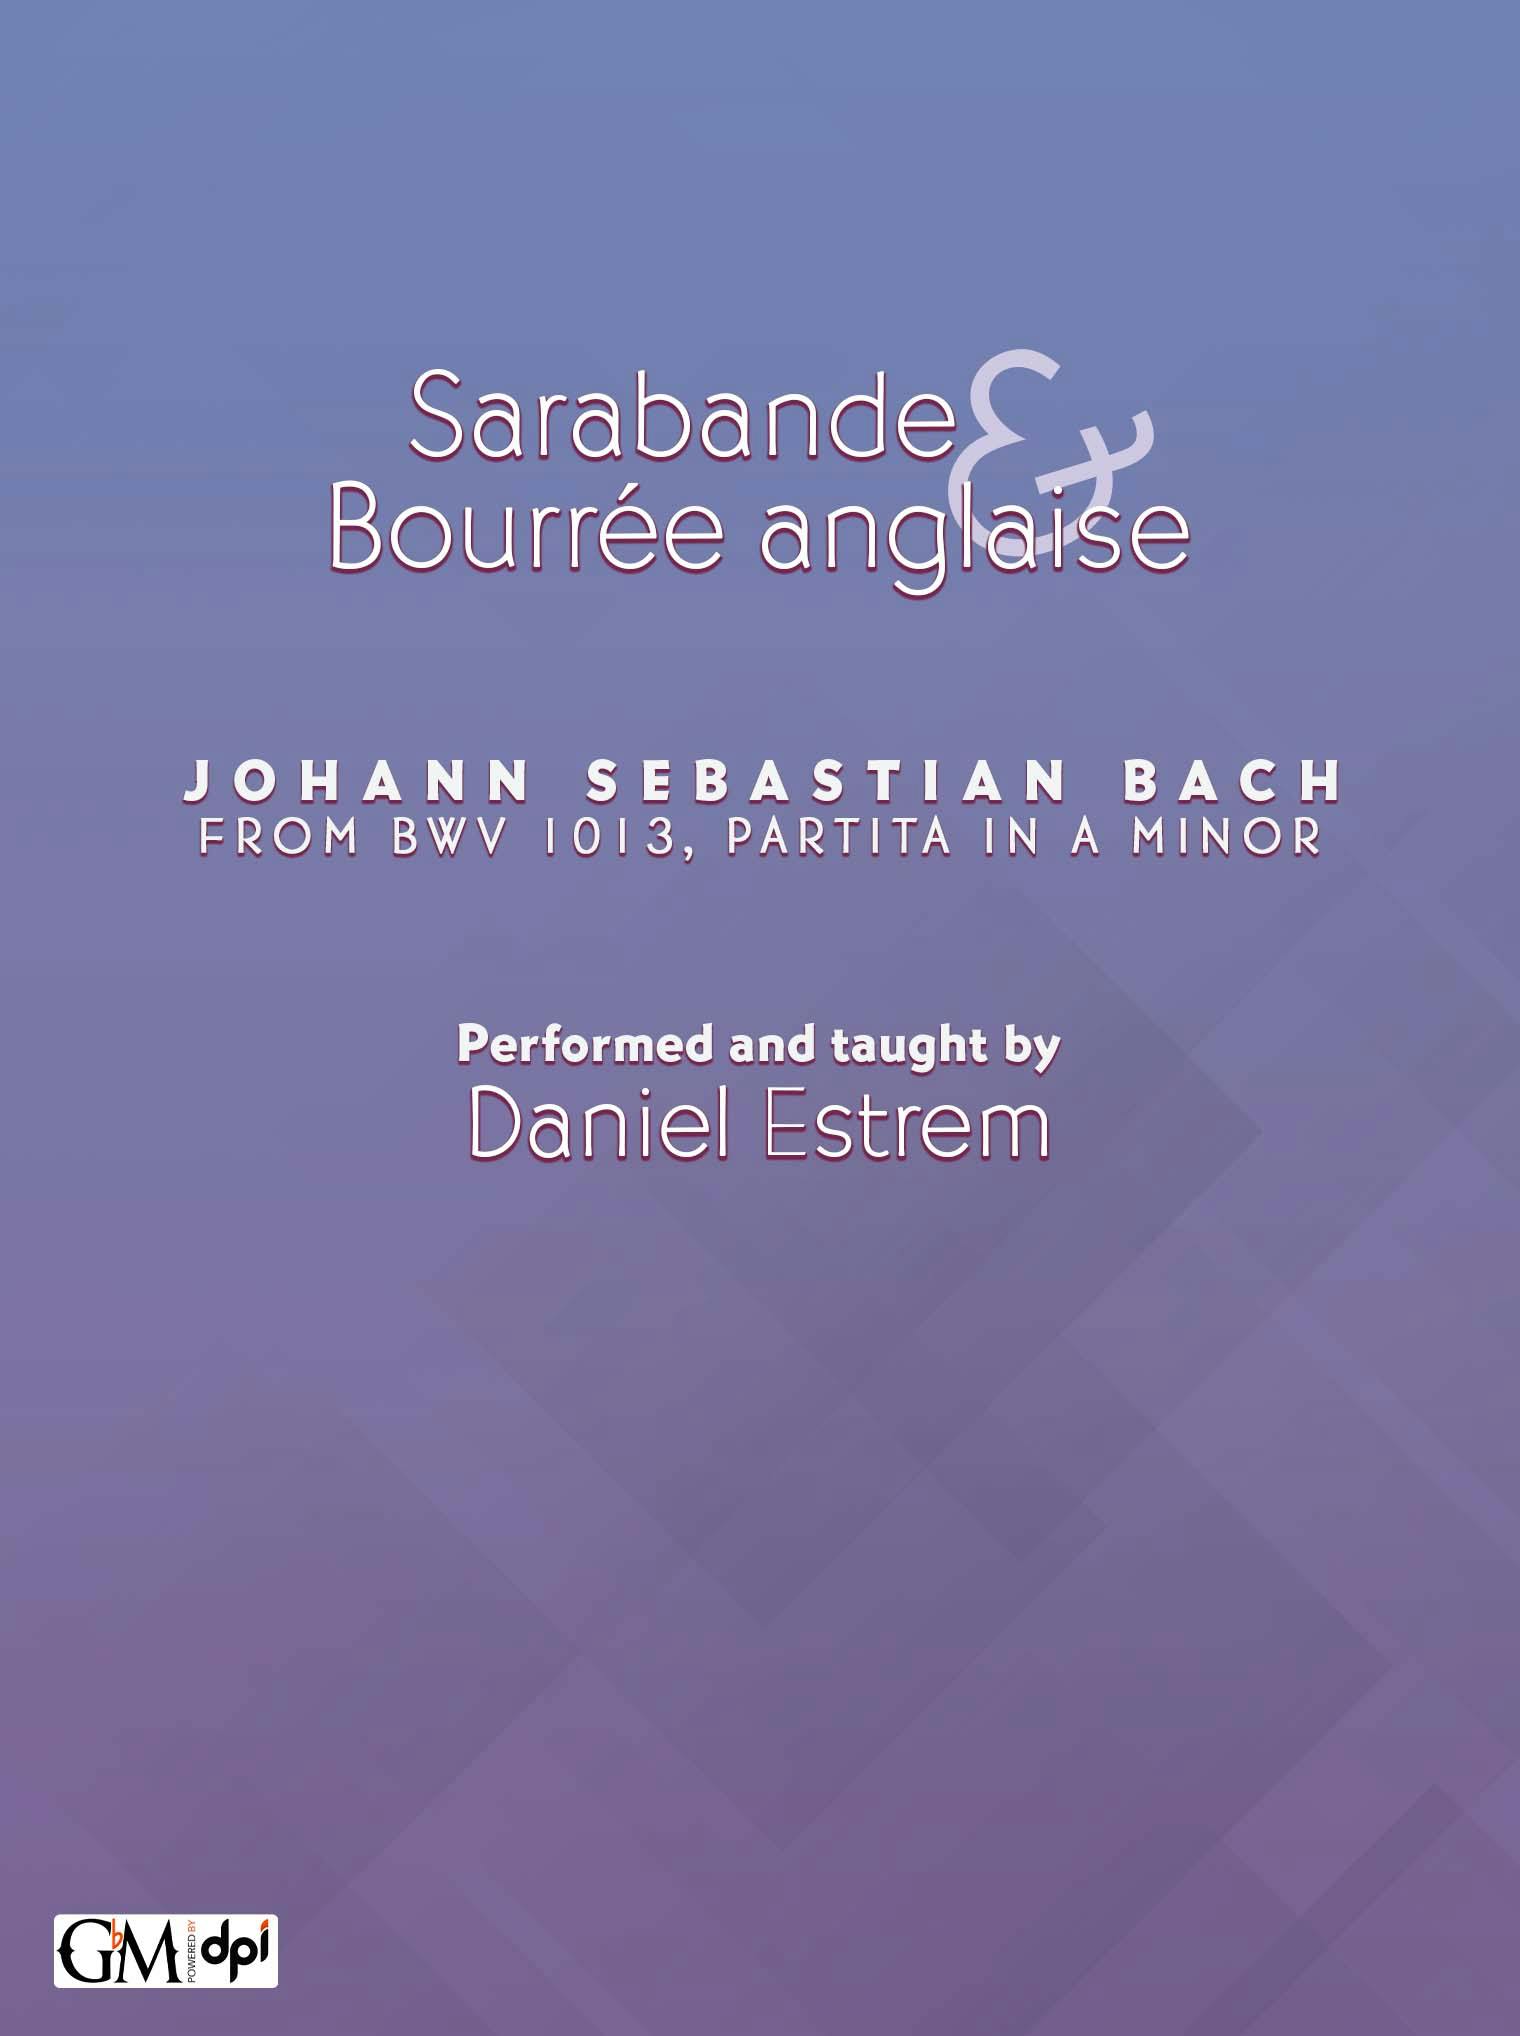 Sarabande & Bourrée anglaise cover